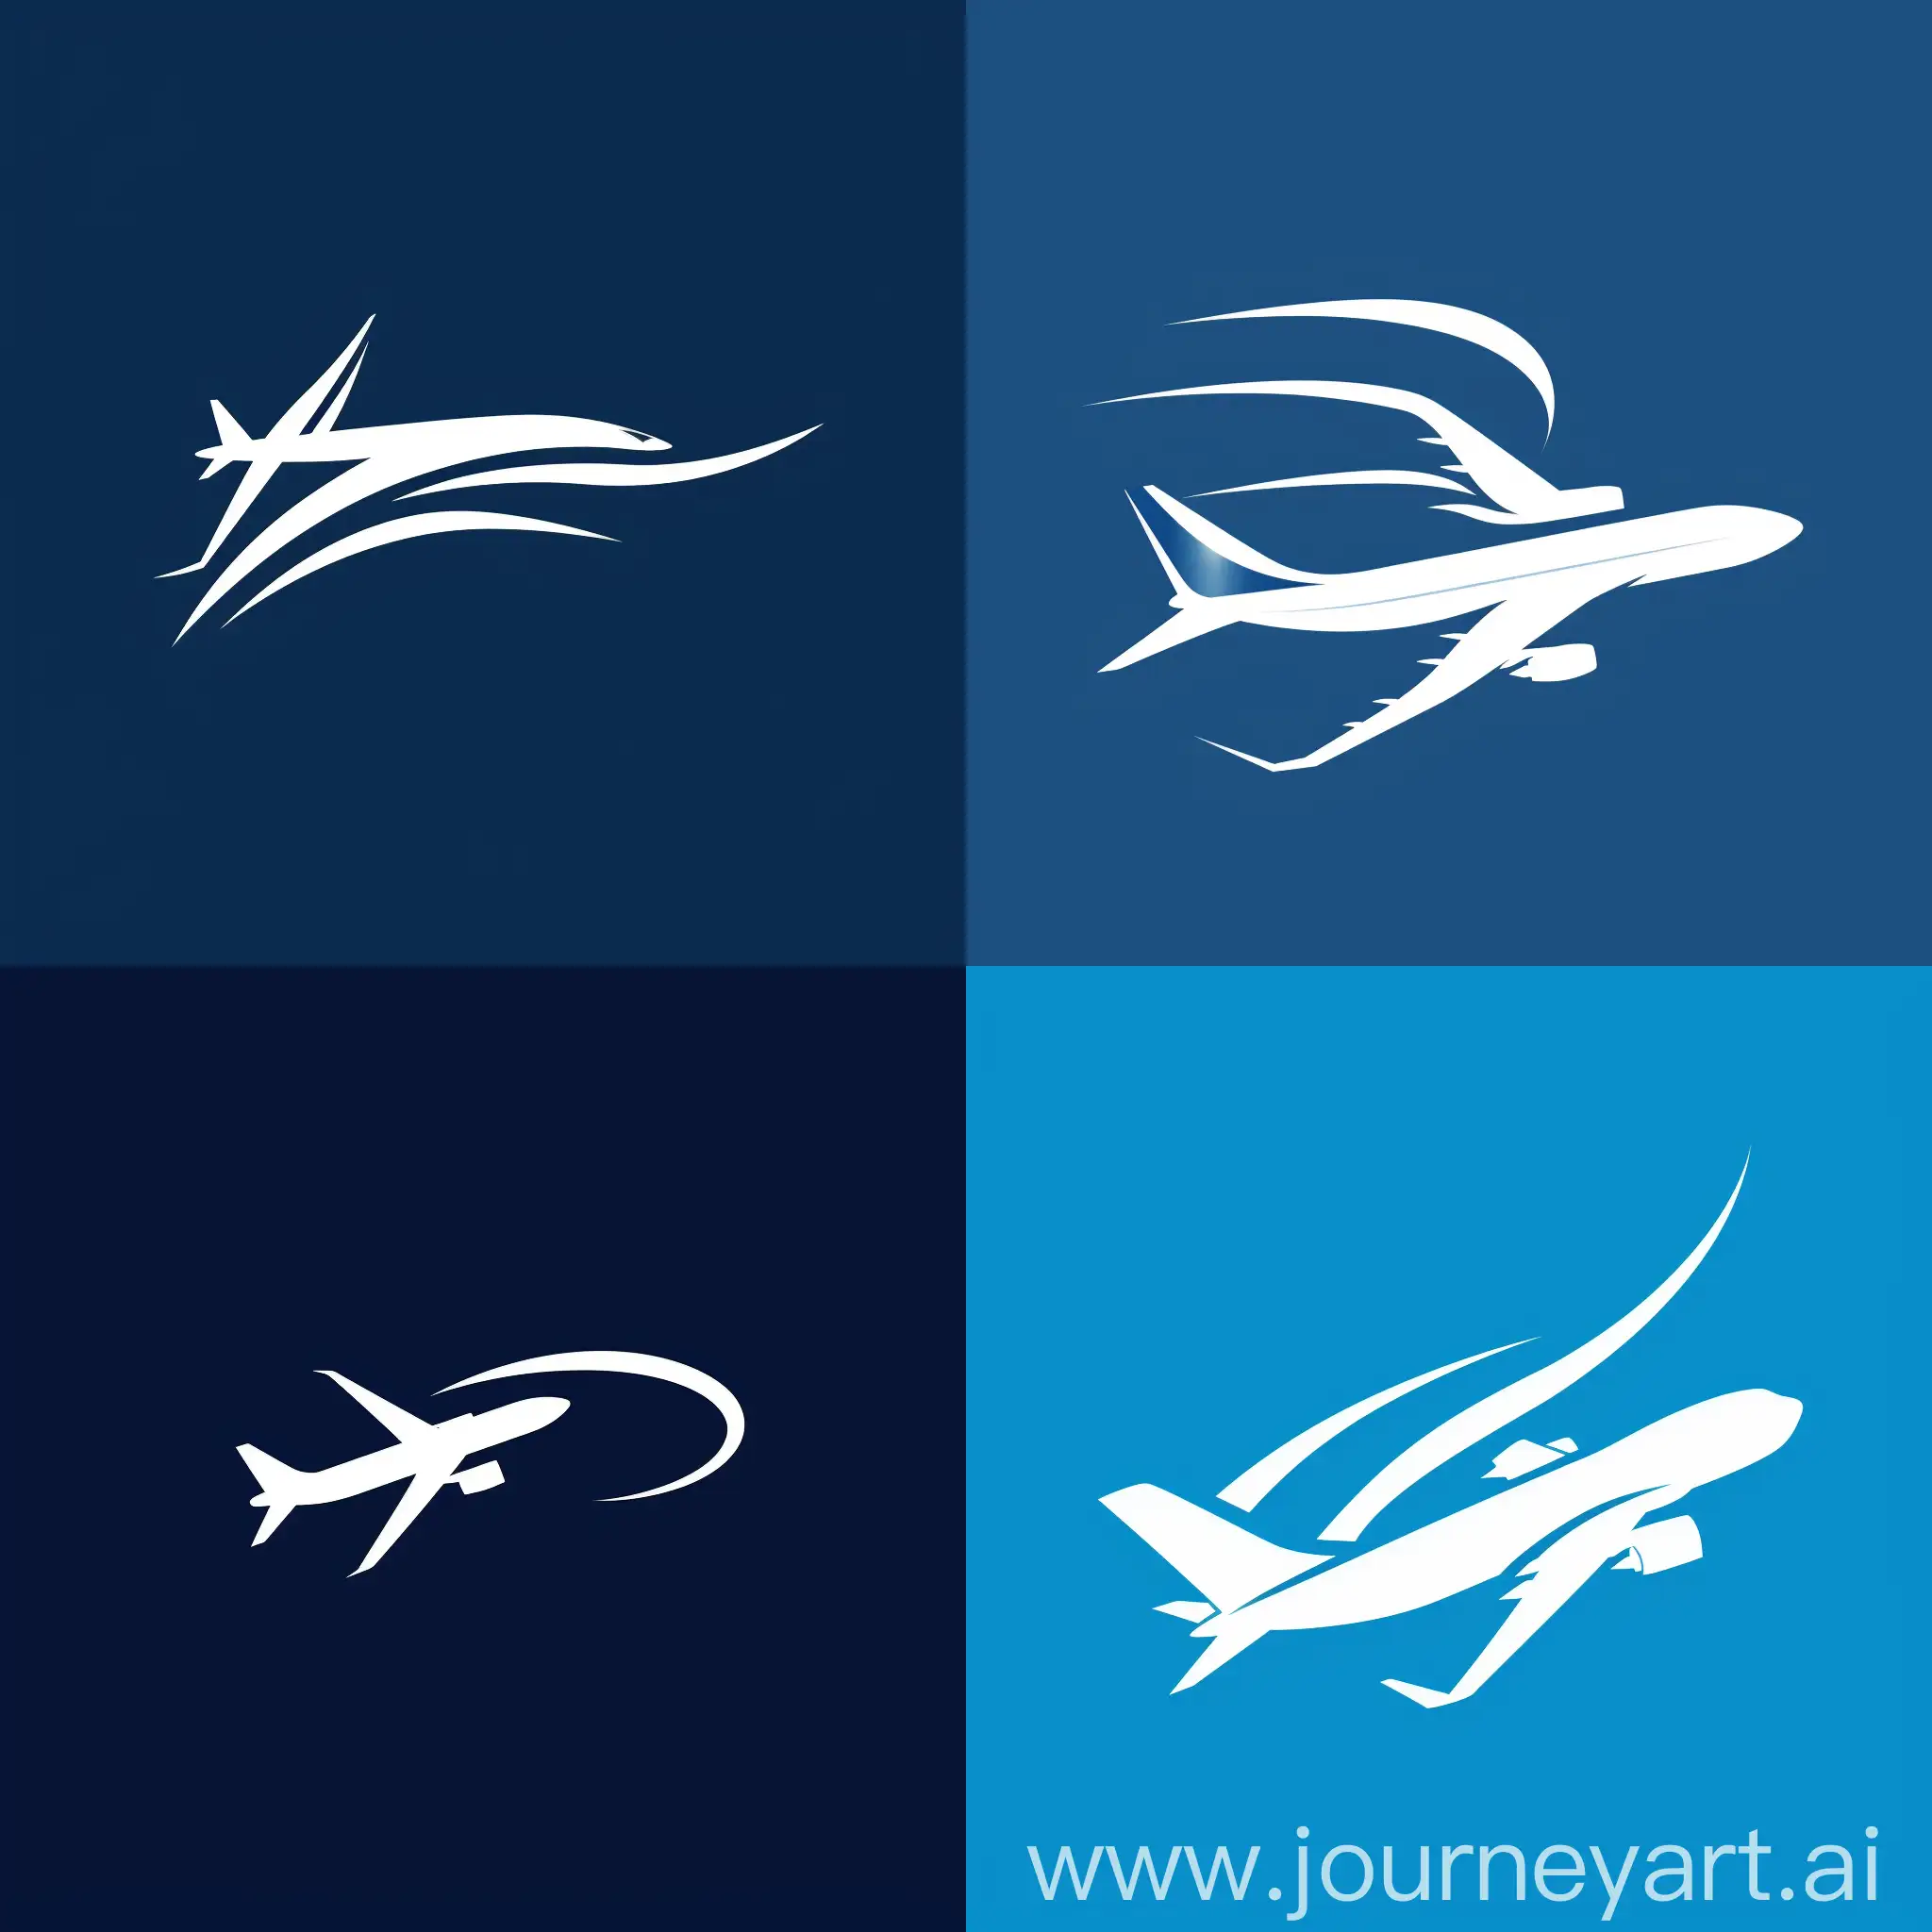 logo for flights company